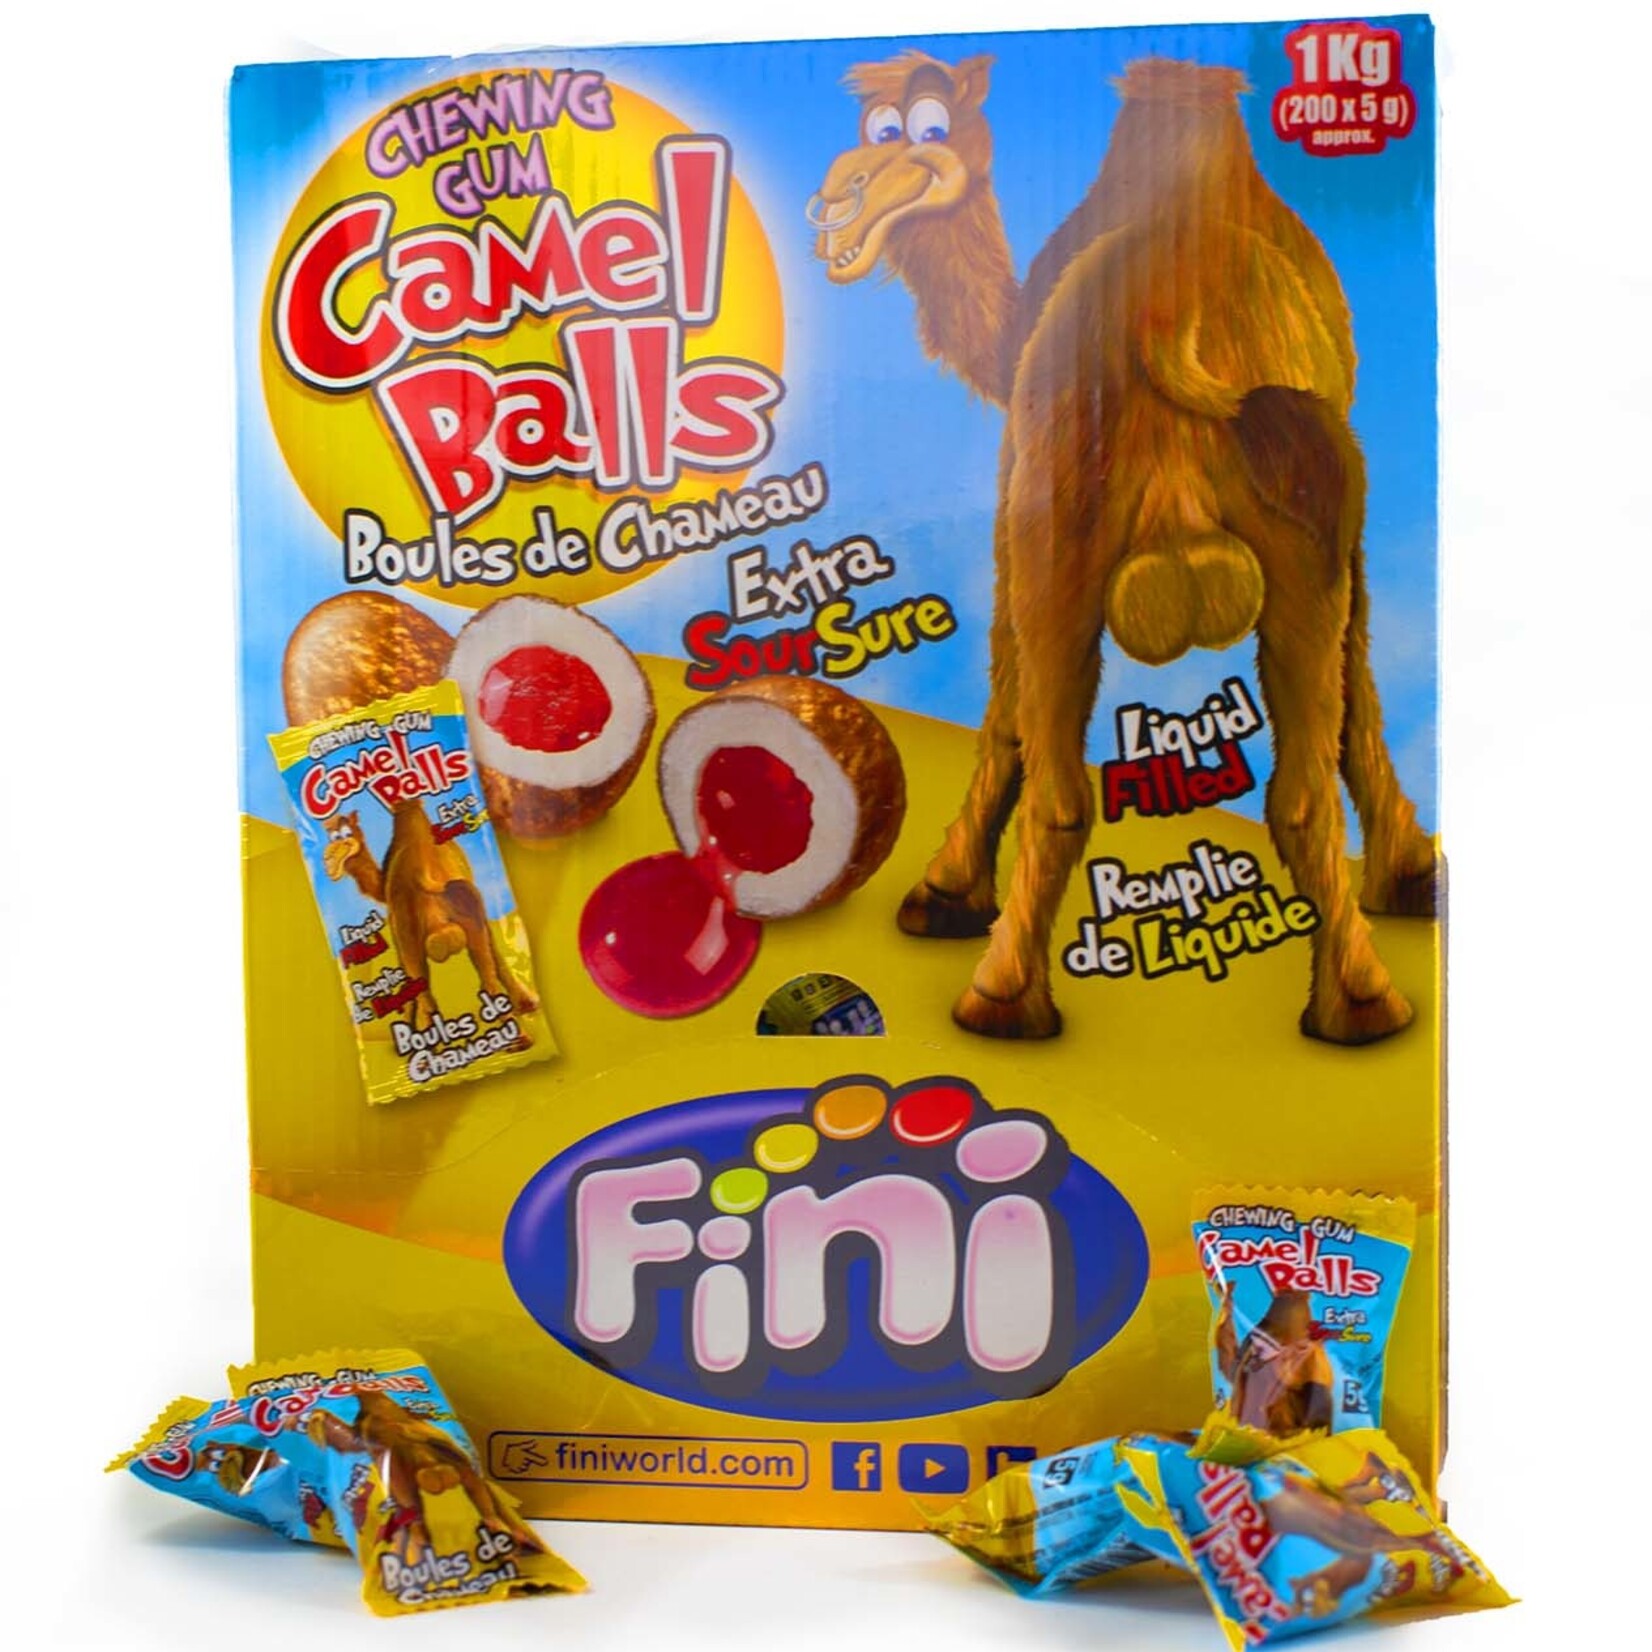 Camel Balls, Chewing gum au coeur liquide boule de chameau